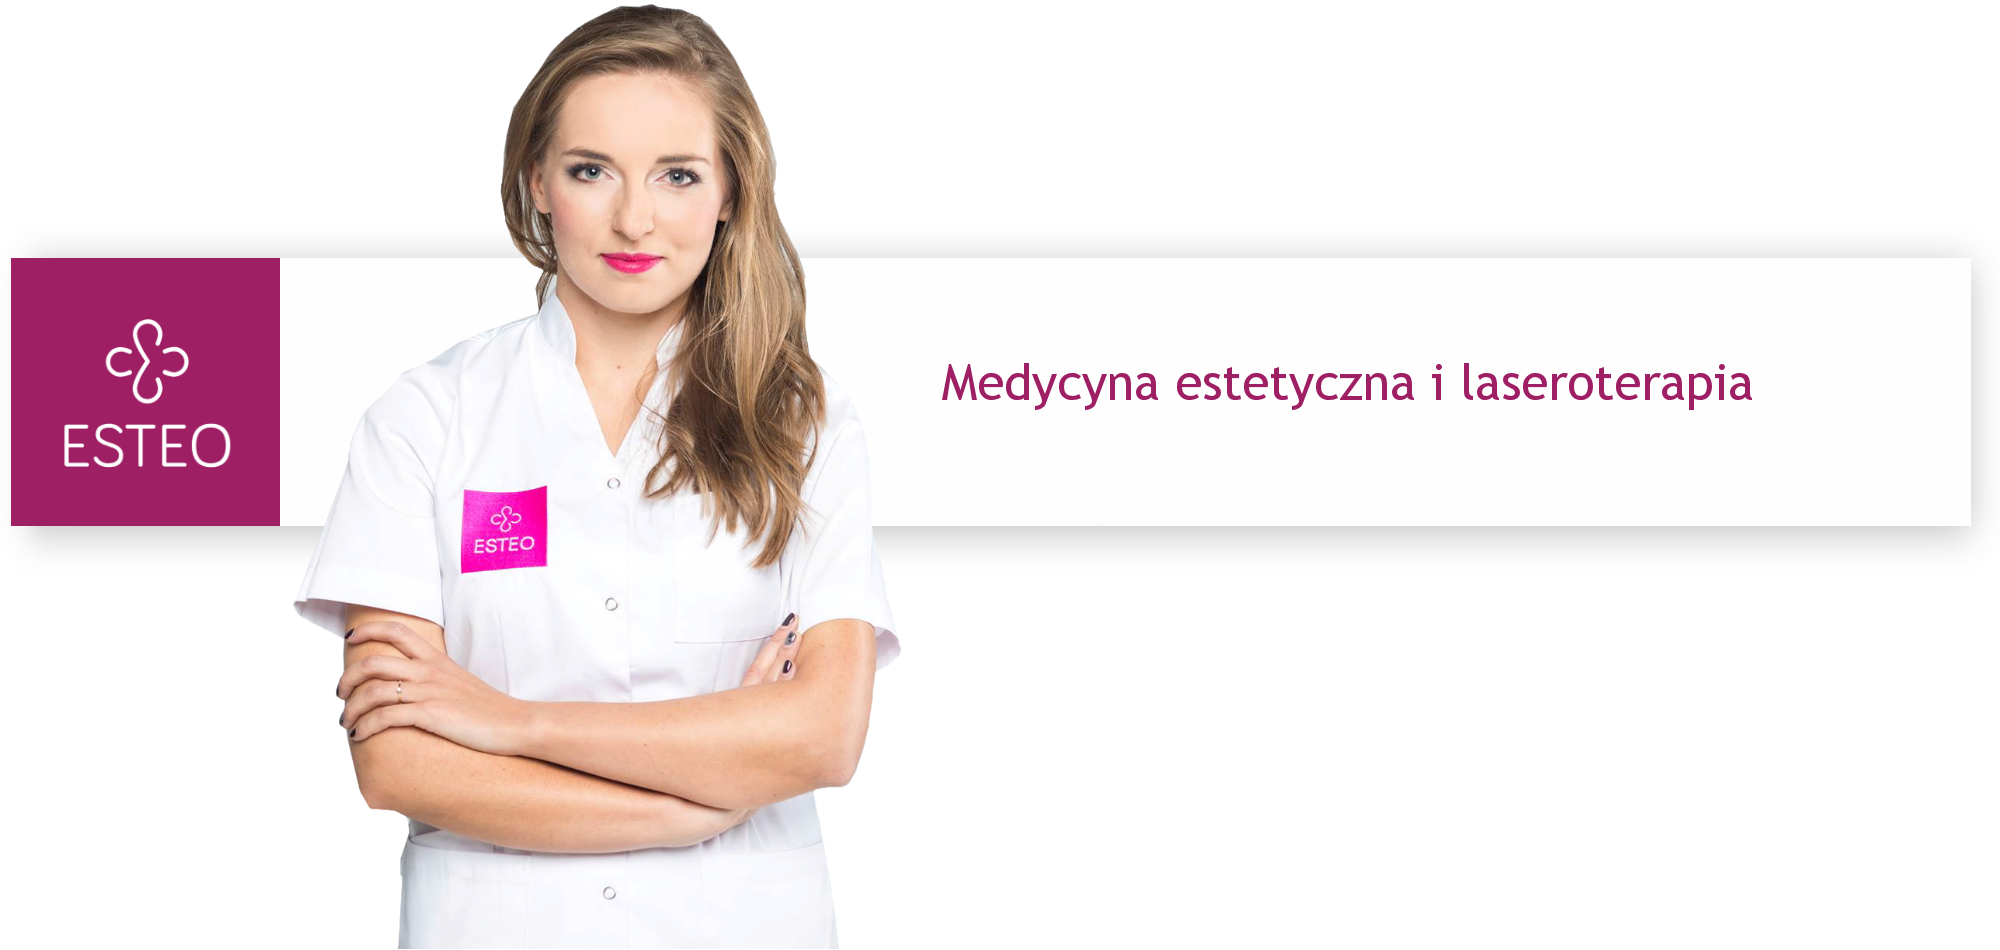 Esteo - medycyna estetyczna Bielsko-Biała